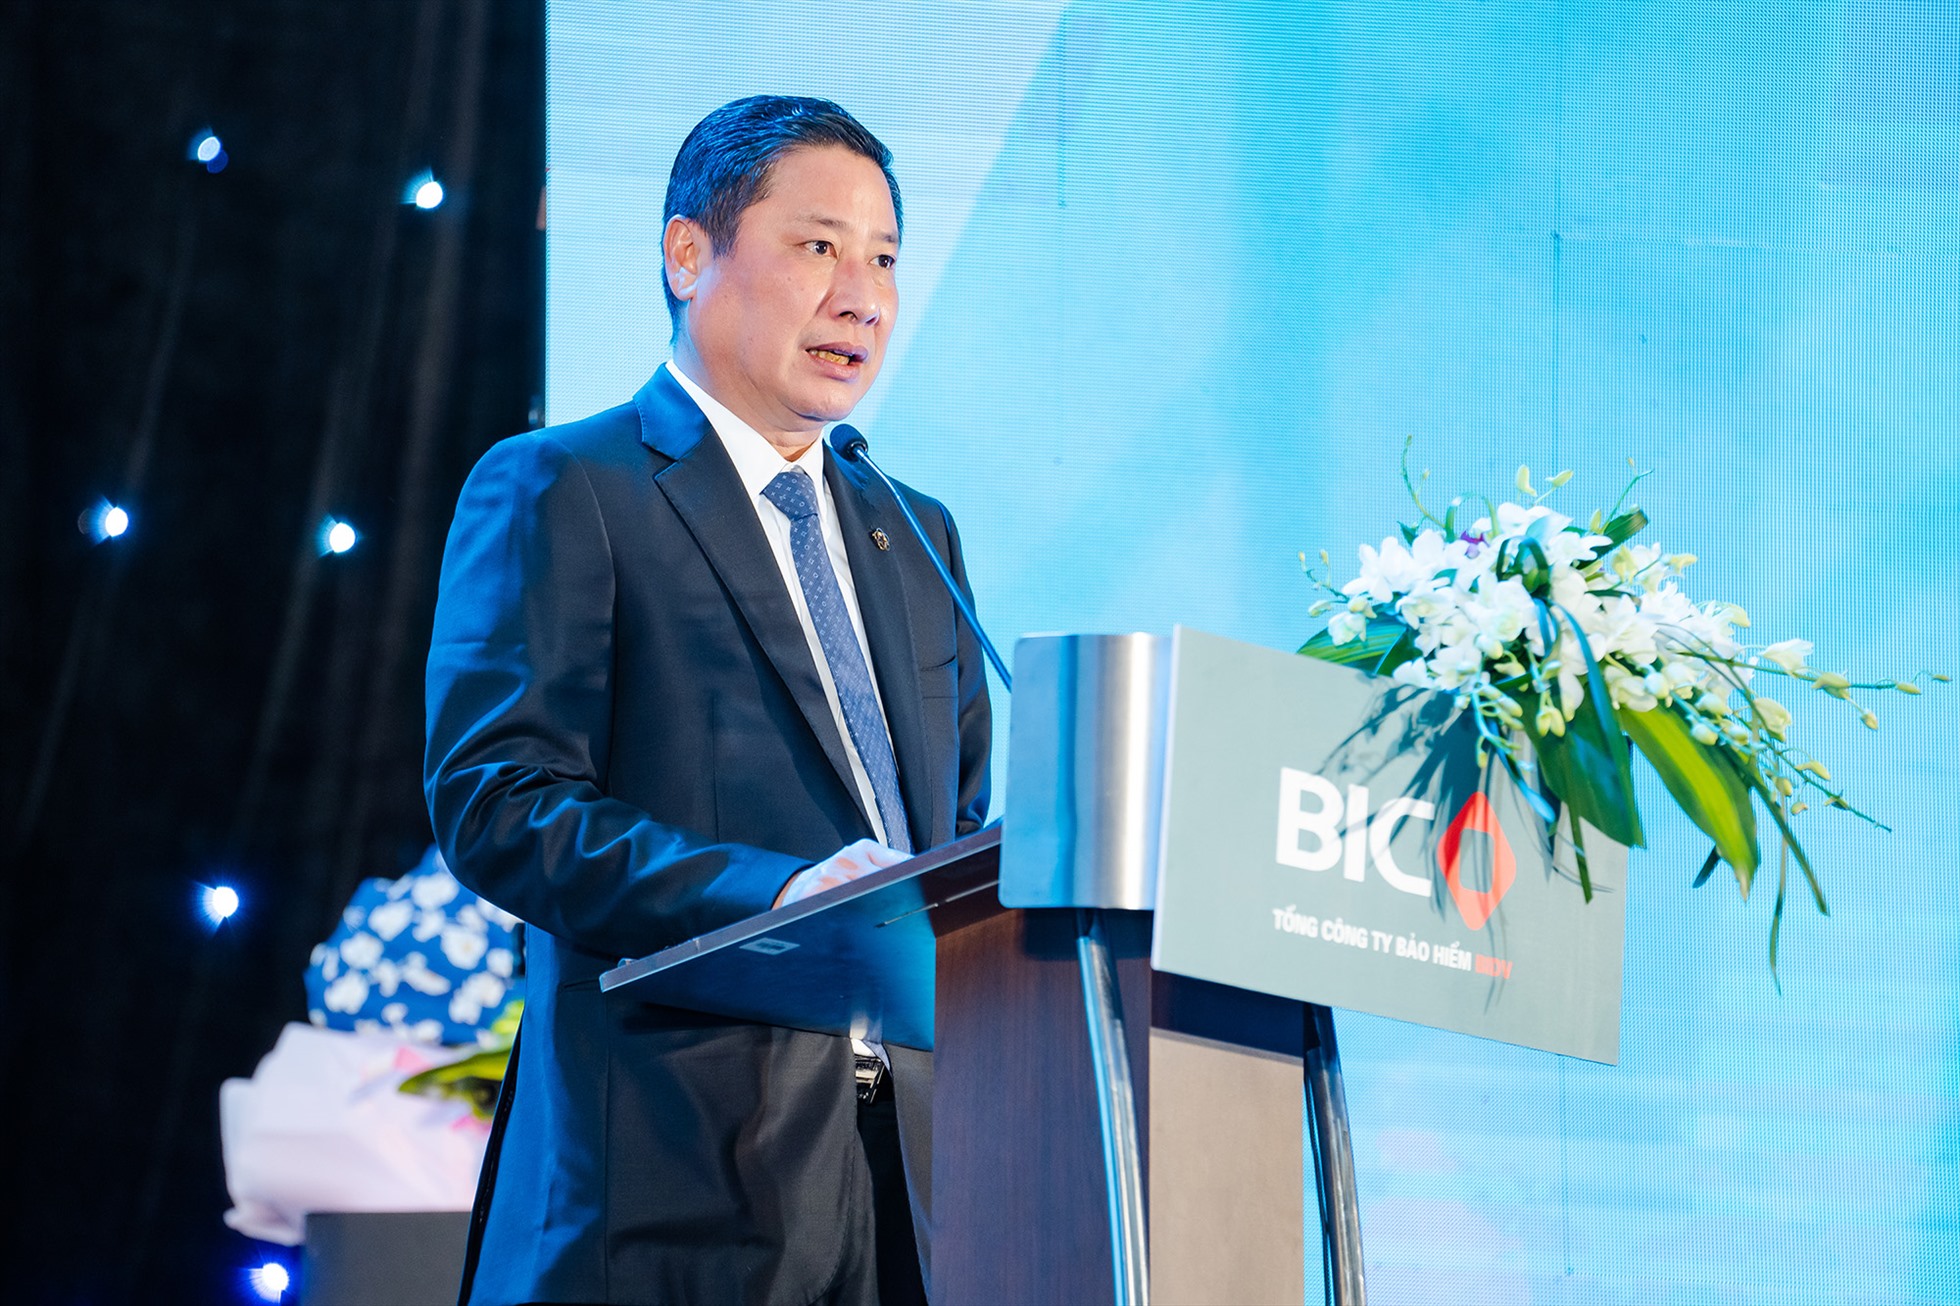 Tổng Giám đốc BIC Trần Hoài An phát biểu tại Hội nghị. Ảnh: BIC